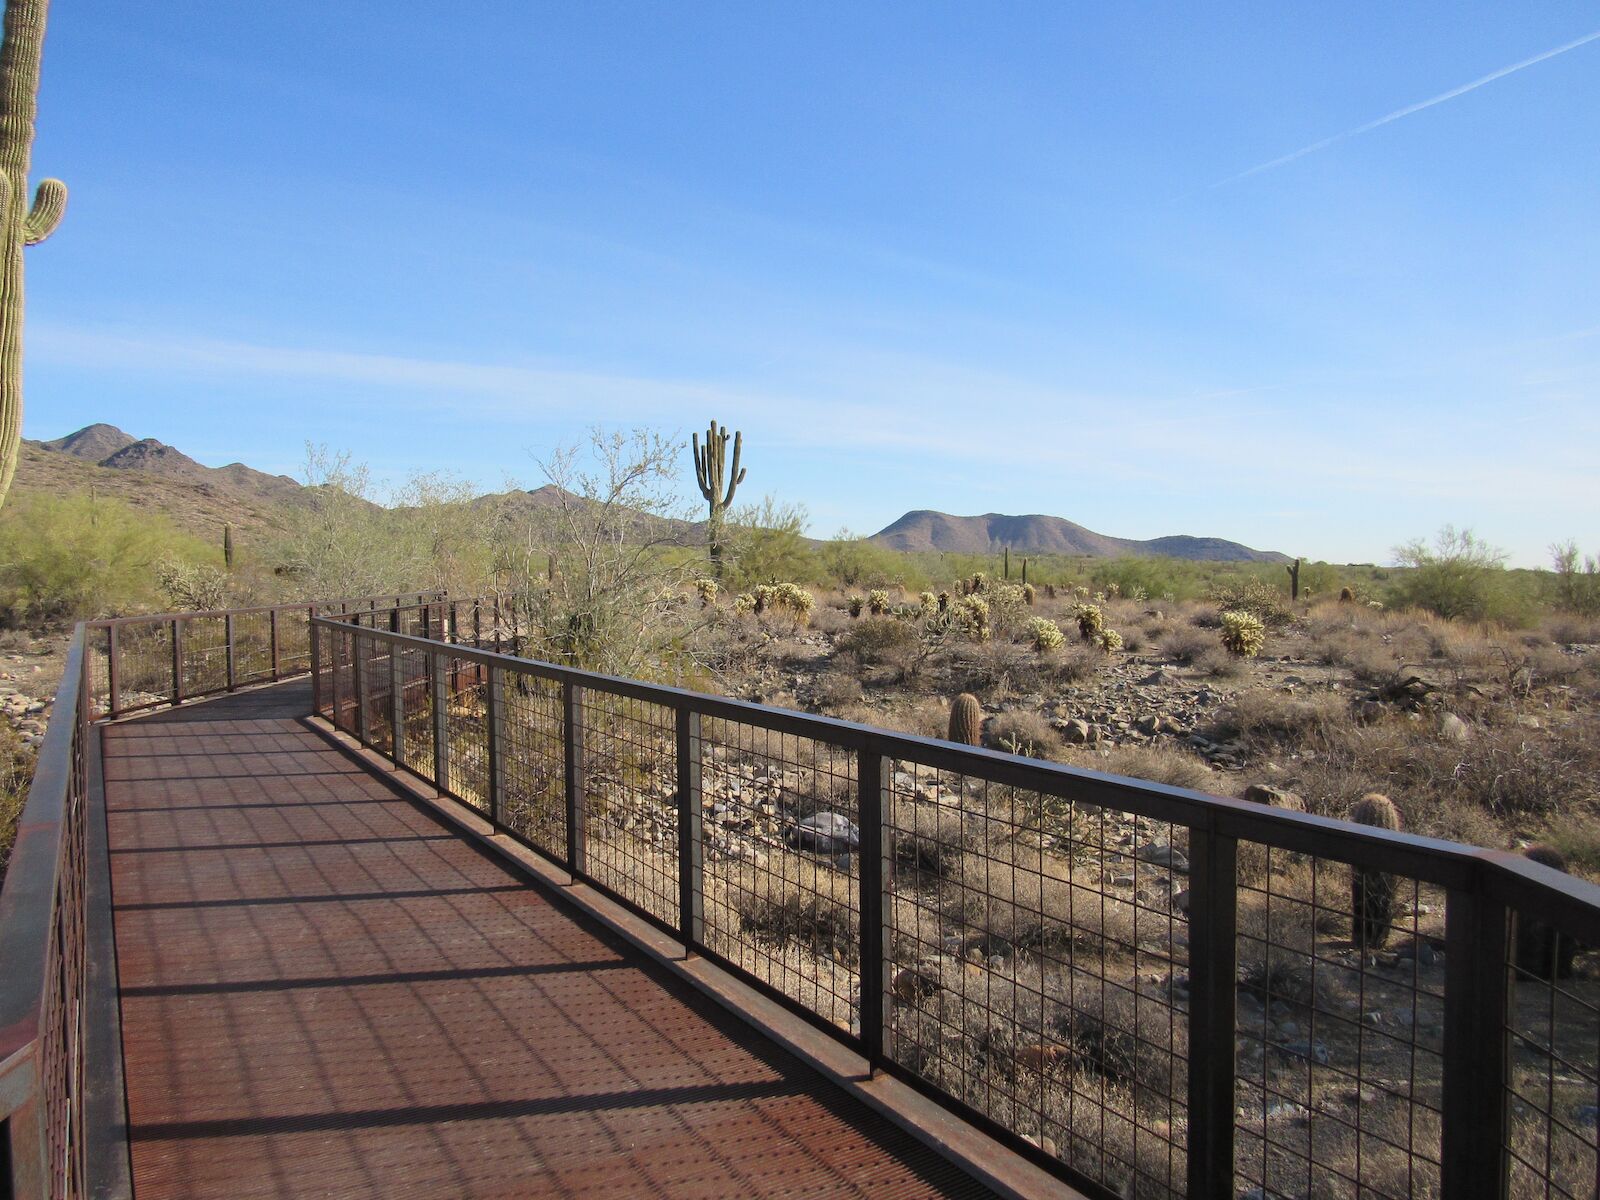 Metal walkway in the desert, McDowell Sonoran Preserve